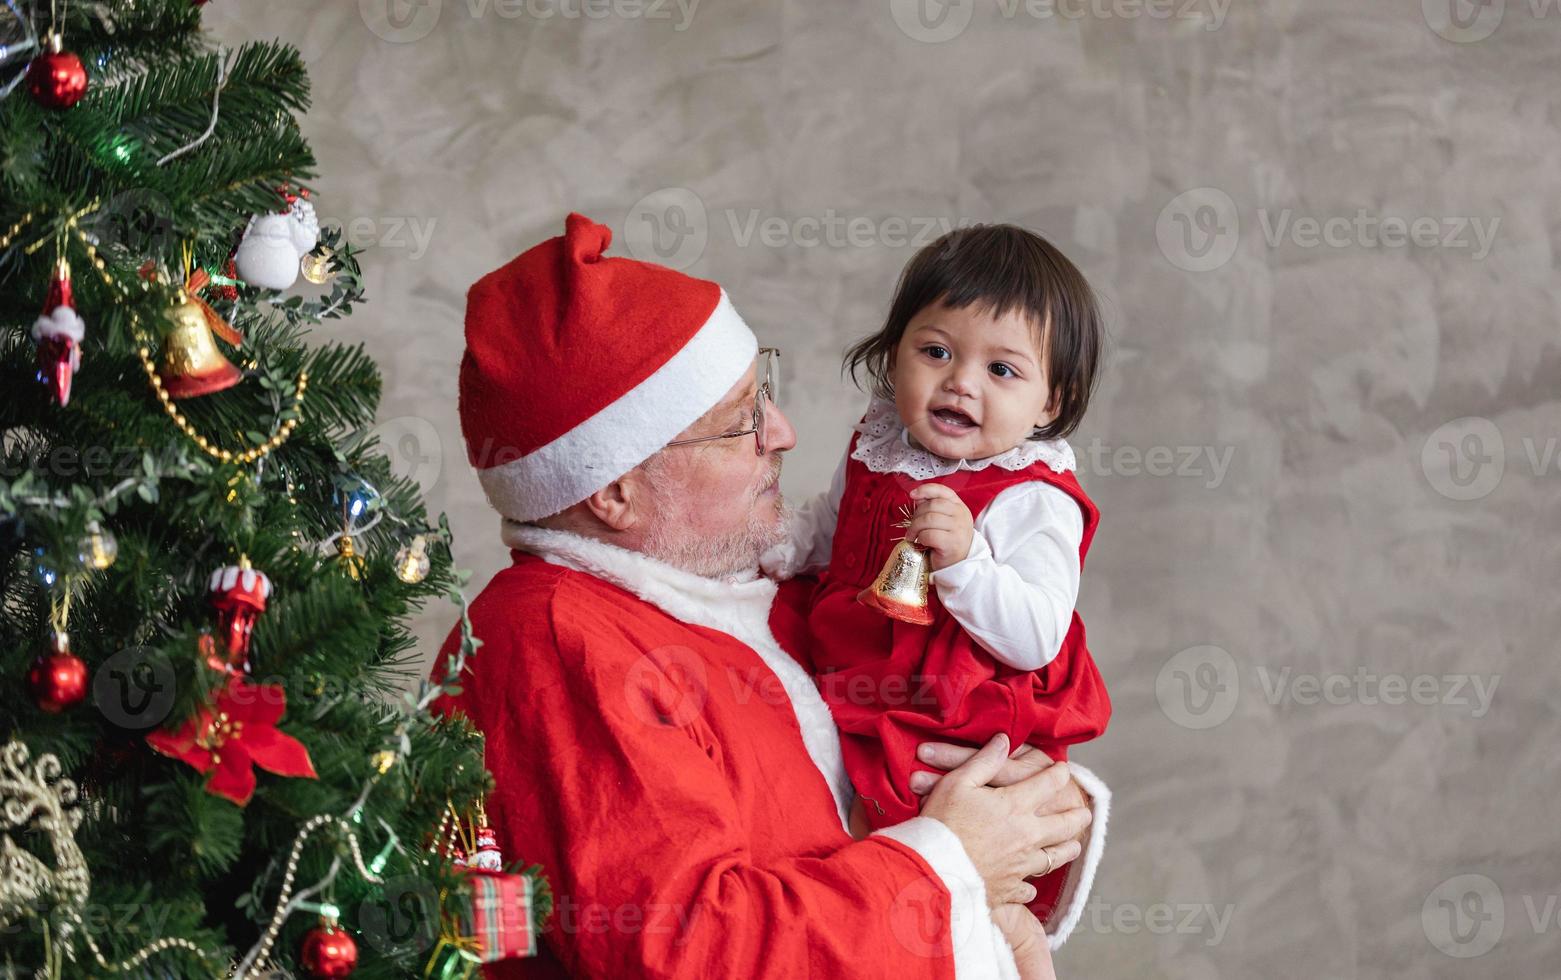 der weihnachtsmann hebt das glückliche kleinkindmädchen hoch und lacht fröhlich, während er hilft, den weihnachtsbaum auf dem rücken für das saisonfeierkonzept zu schmücken foto